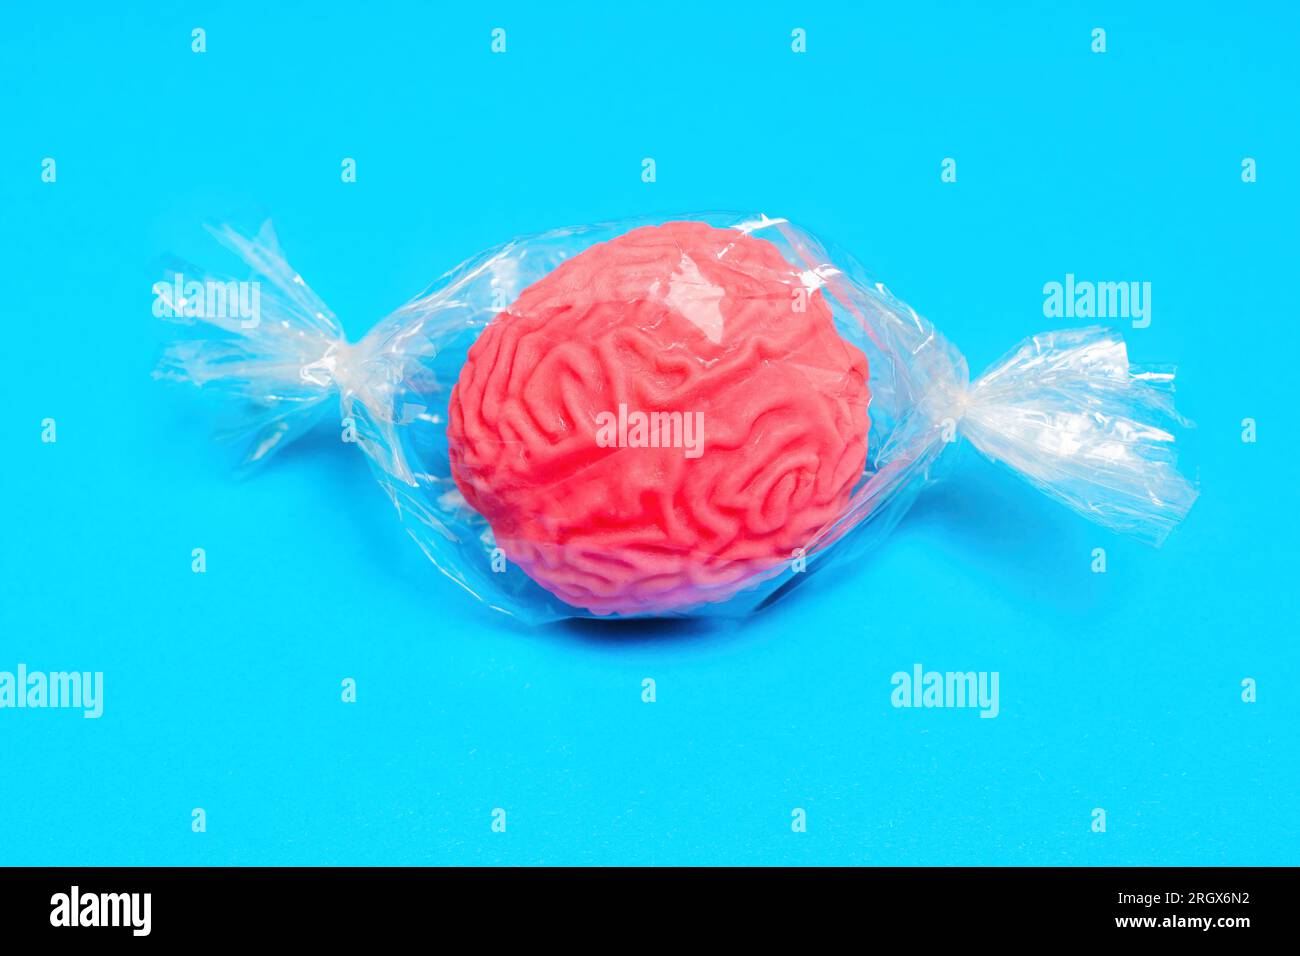 Modello di cervello umano in miniatura avvolto in plastica, simile a una caramella. Sviluppare il concetto di fragilità cerebrale. Foto Stock